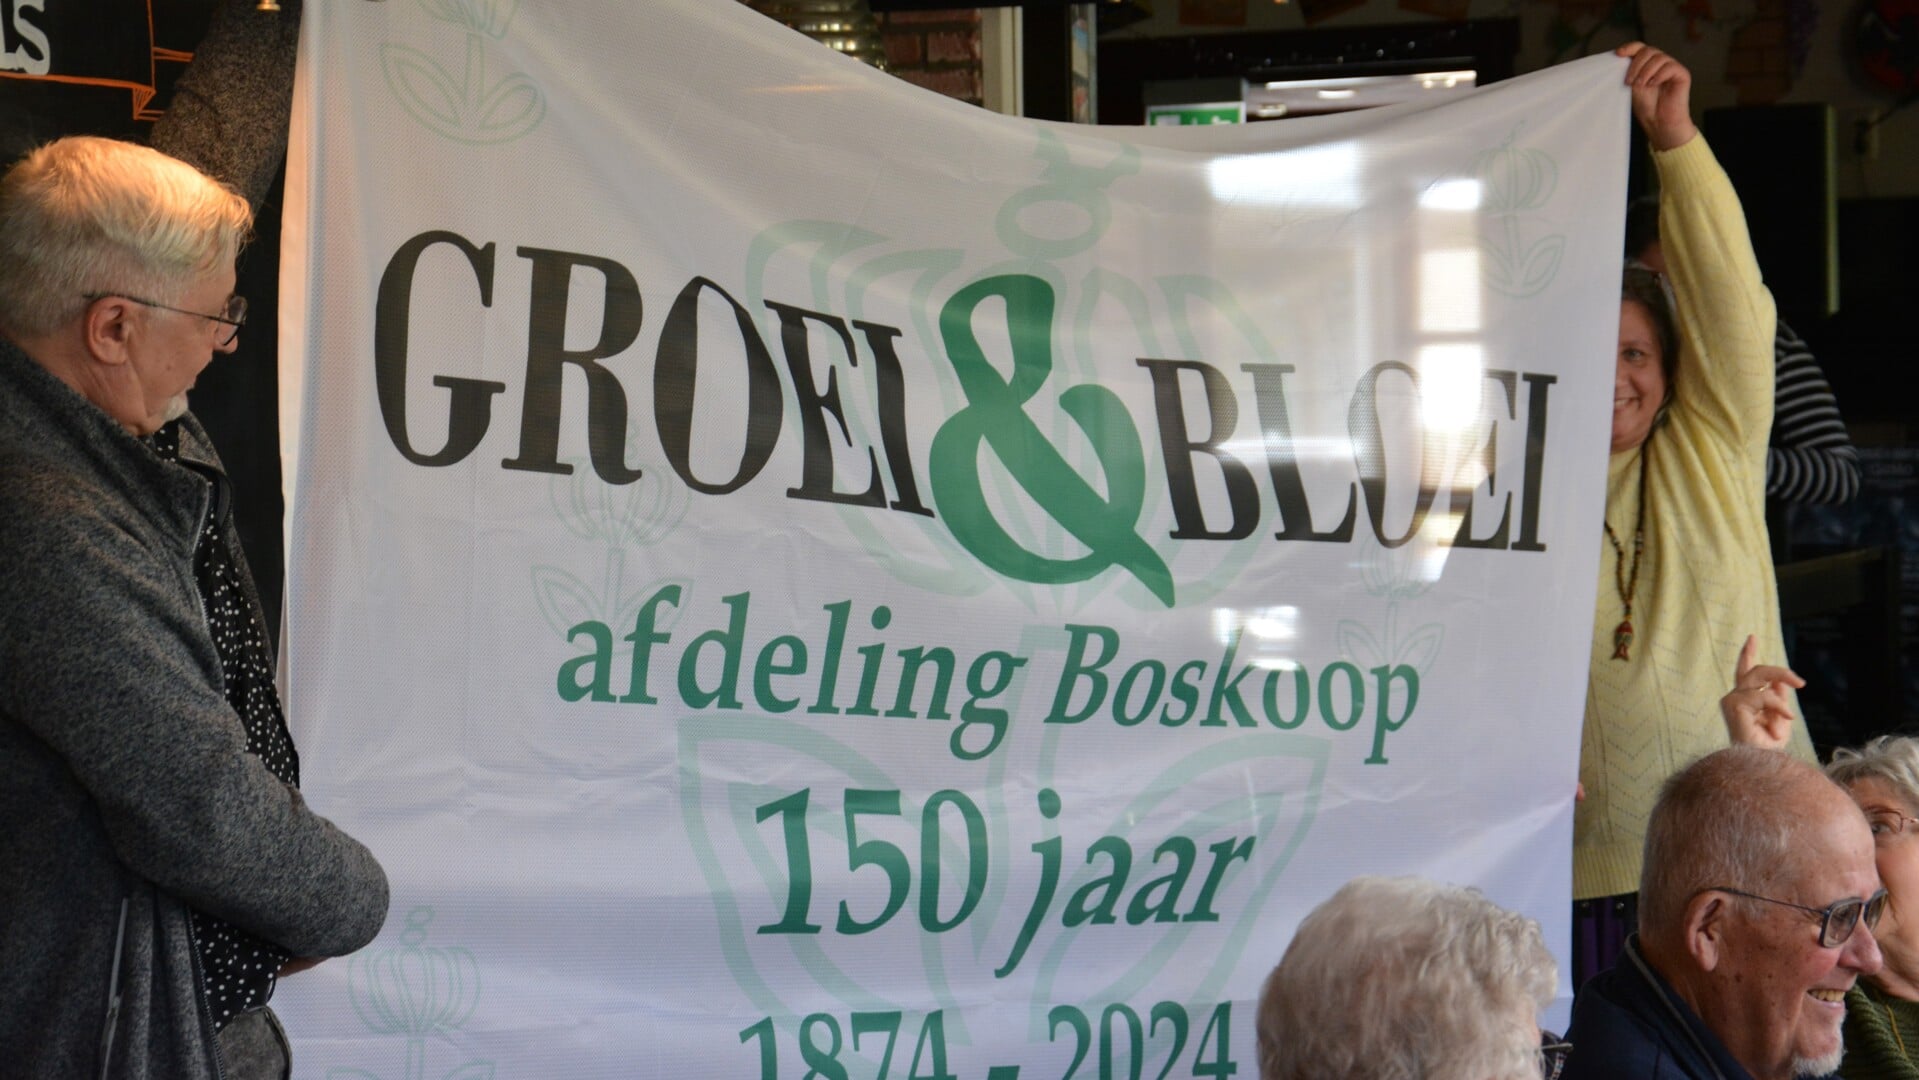 Groei & Bloei afdeling Boskoop bestaat 150 jaar.